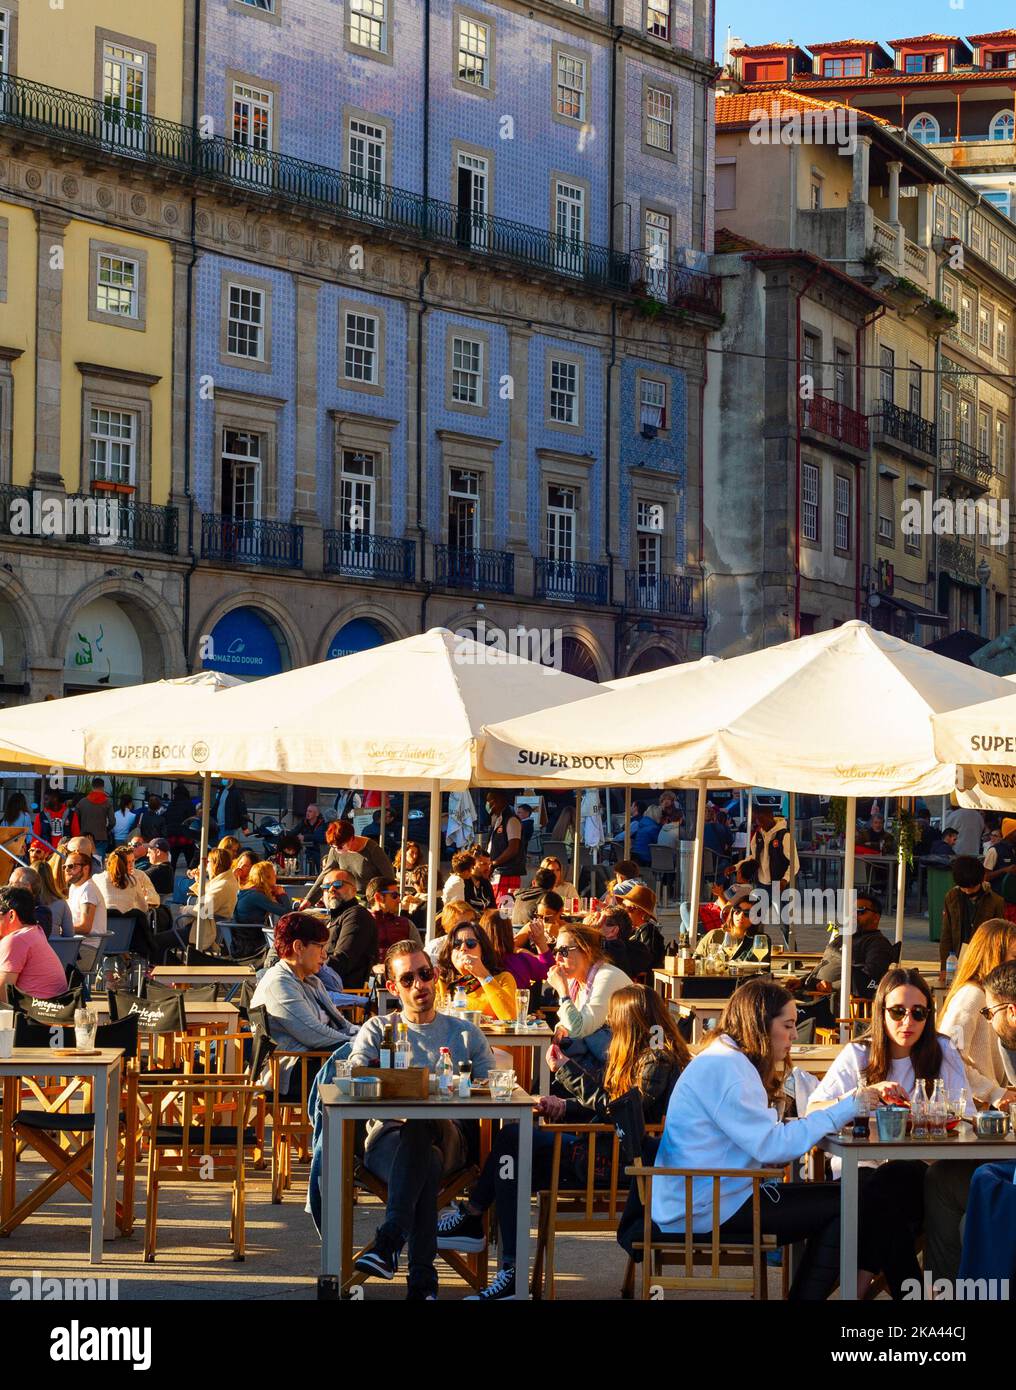 PORTO, PORTOGALLO - 7 NOVEMBRE 2021: Persone che si siedono in caffè e ristoranti di strada al argine centrale, affollata area turistica, architetto tradizionale Foto Stock